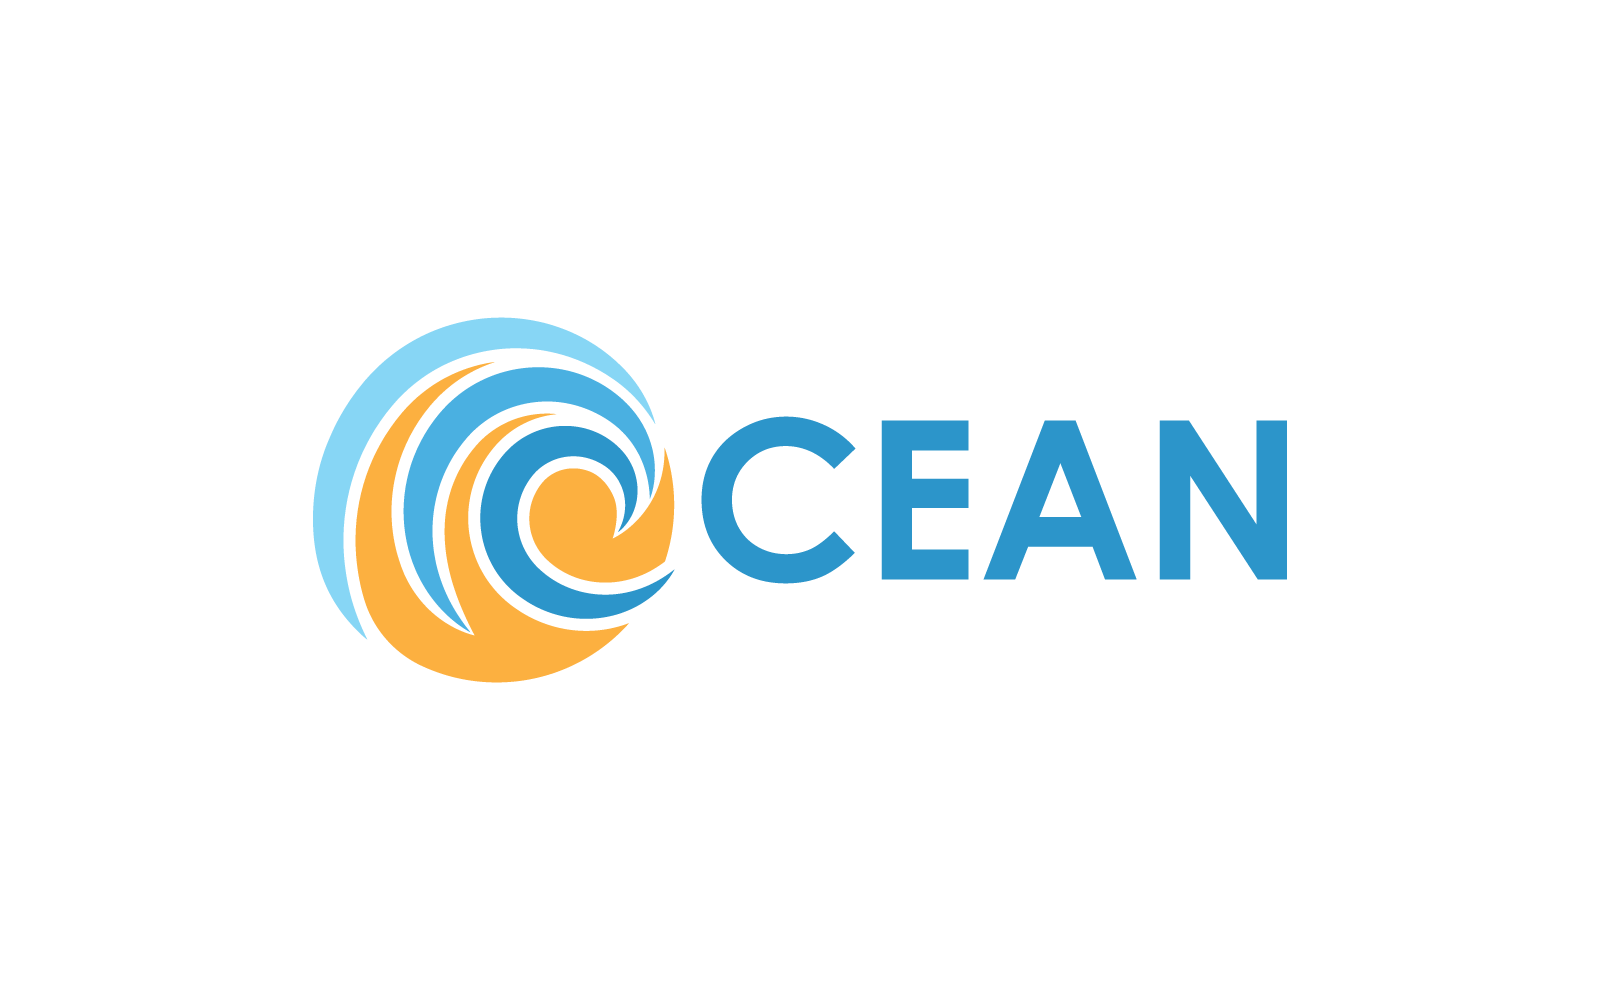 Abstrakt Wave ocean logotyp design för affärsmall